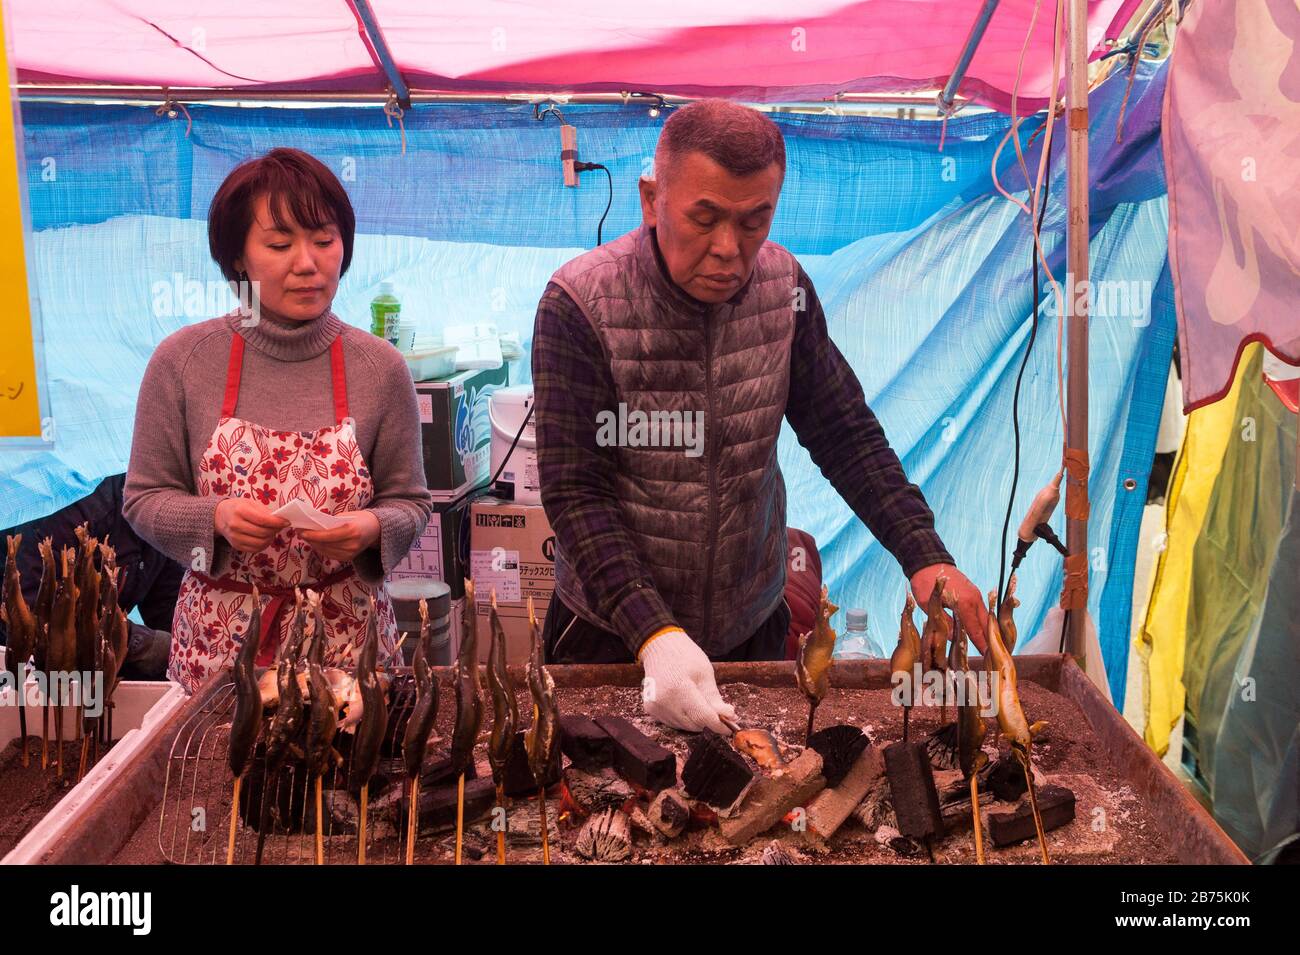 31.12.2017, Tokyo, Japon, Asie - un homme prépare des brochettes de poisson fraîchement rôties sur un stand de rue dans le quartier chibuya de Tokyo. [traduction automatique] Banque D'Images